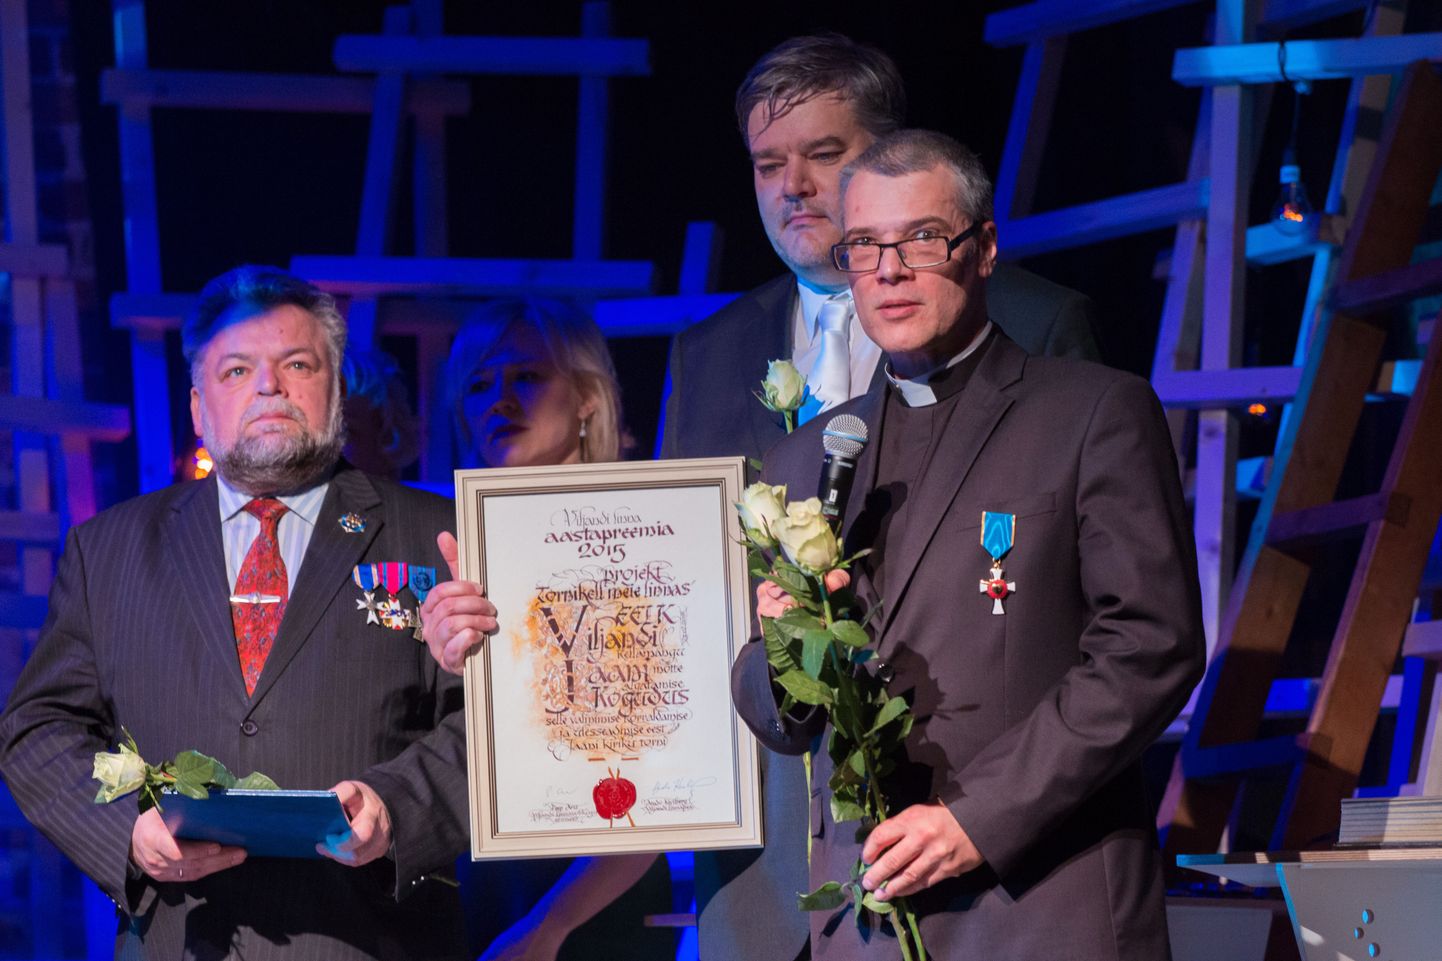 Aasta tagasi sai Viljandi aastapreemia Jaani kogudus, kes tõi Viljandisse esimese kellamängu.